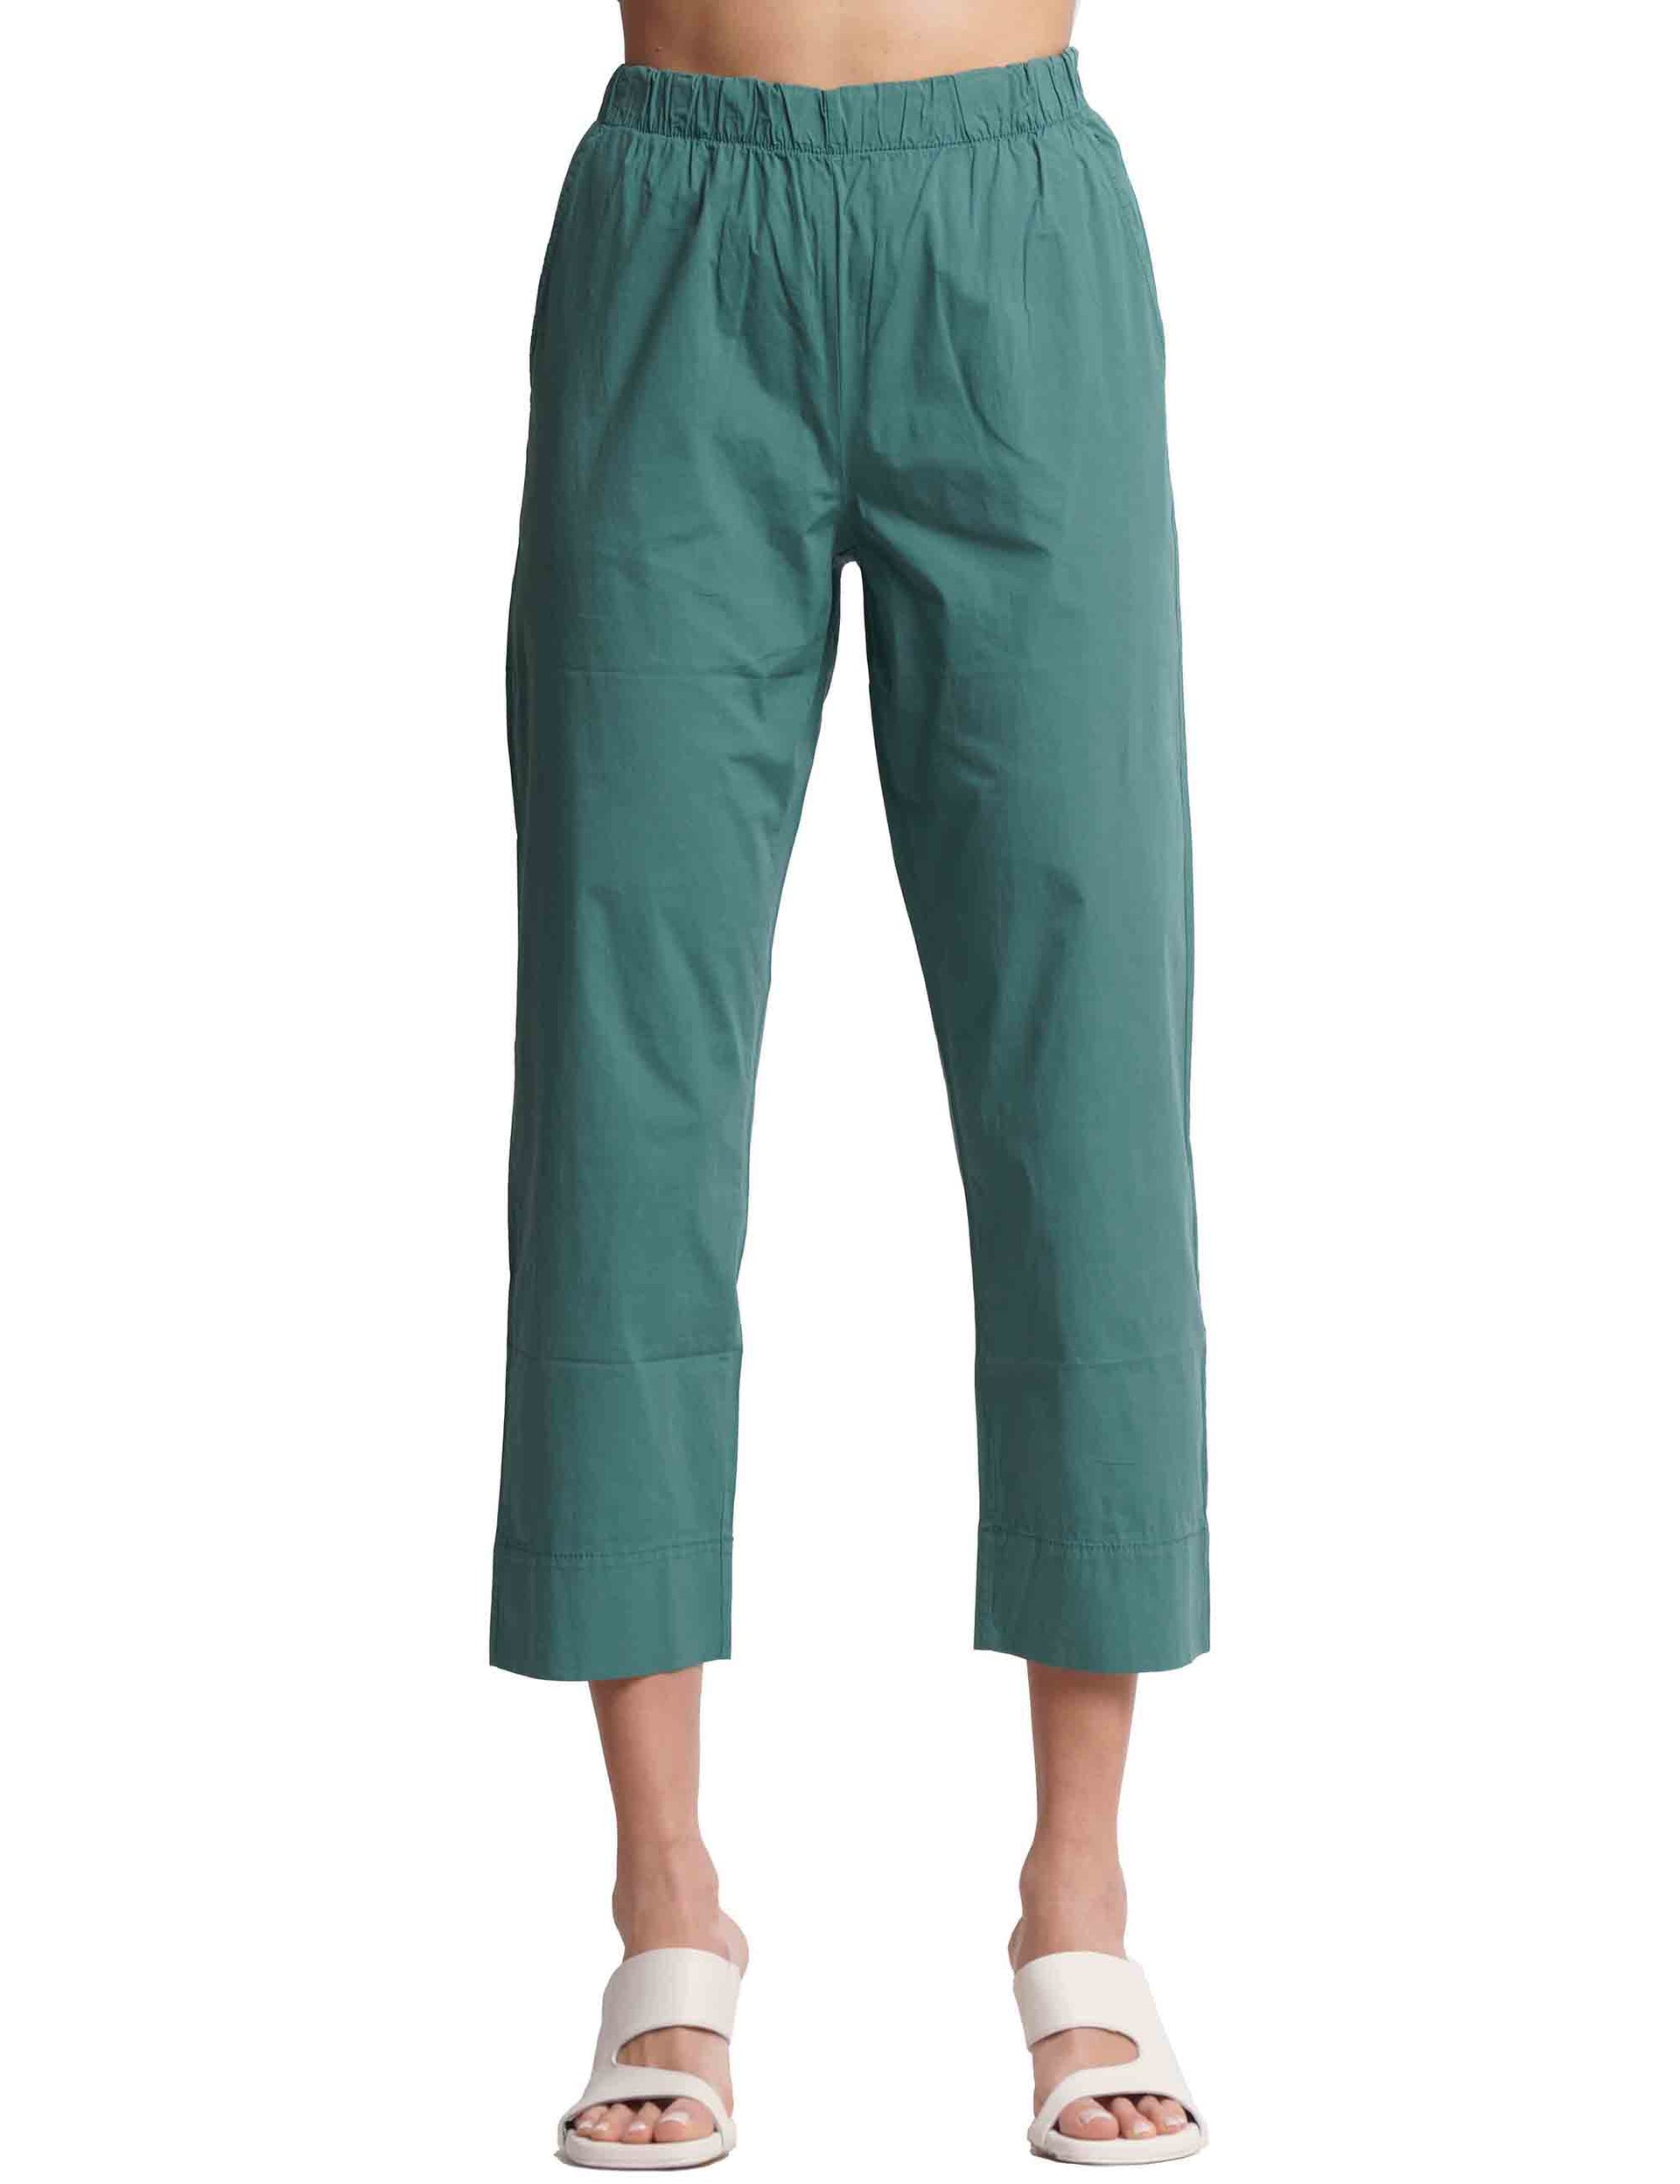 Pantaloni donna in cotone verde con elastico in vita